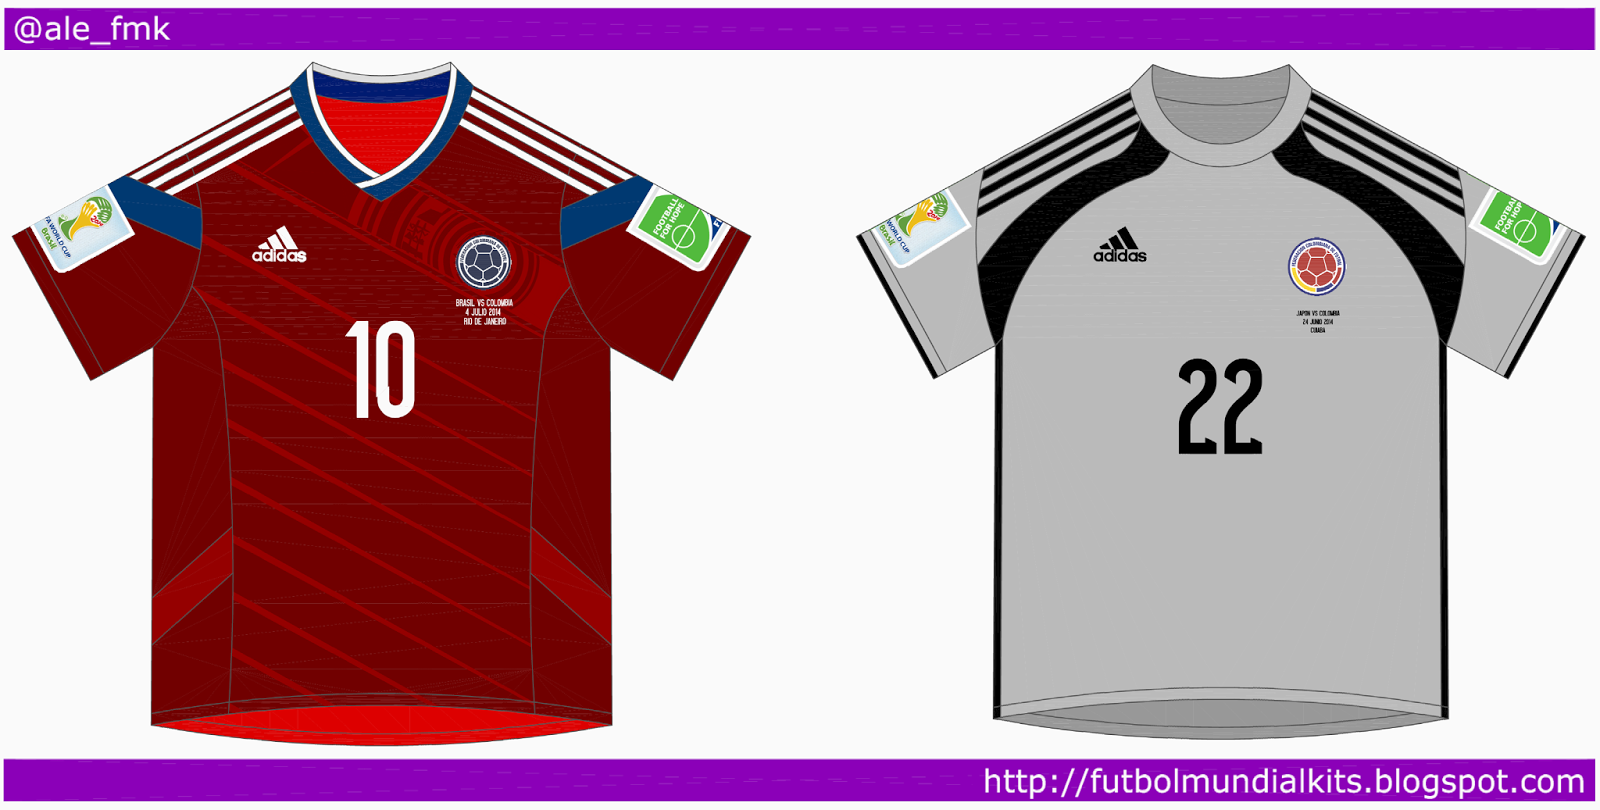 Fútbol Mundial Kits - Uruguay: Selección de Colombia - 2014 (away y